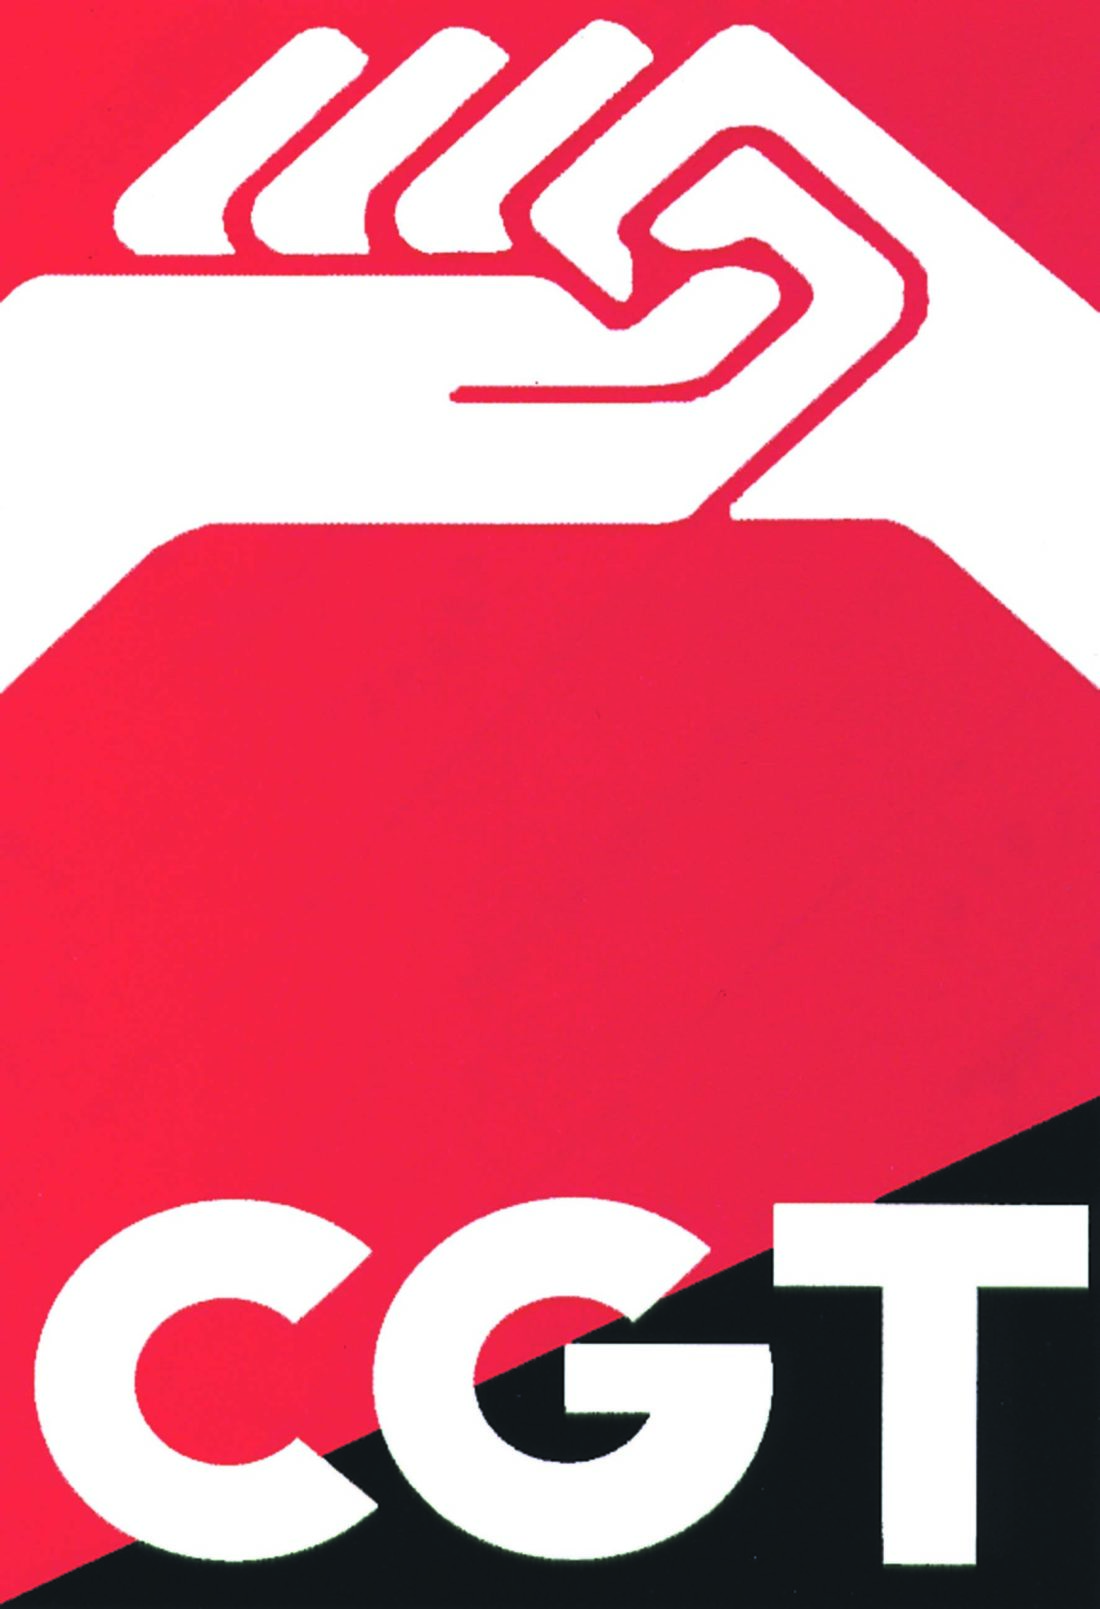 CGT envía una carta al presidente del Gobierno con tabla reivindicativa